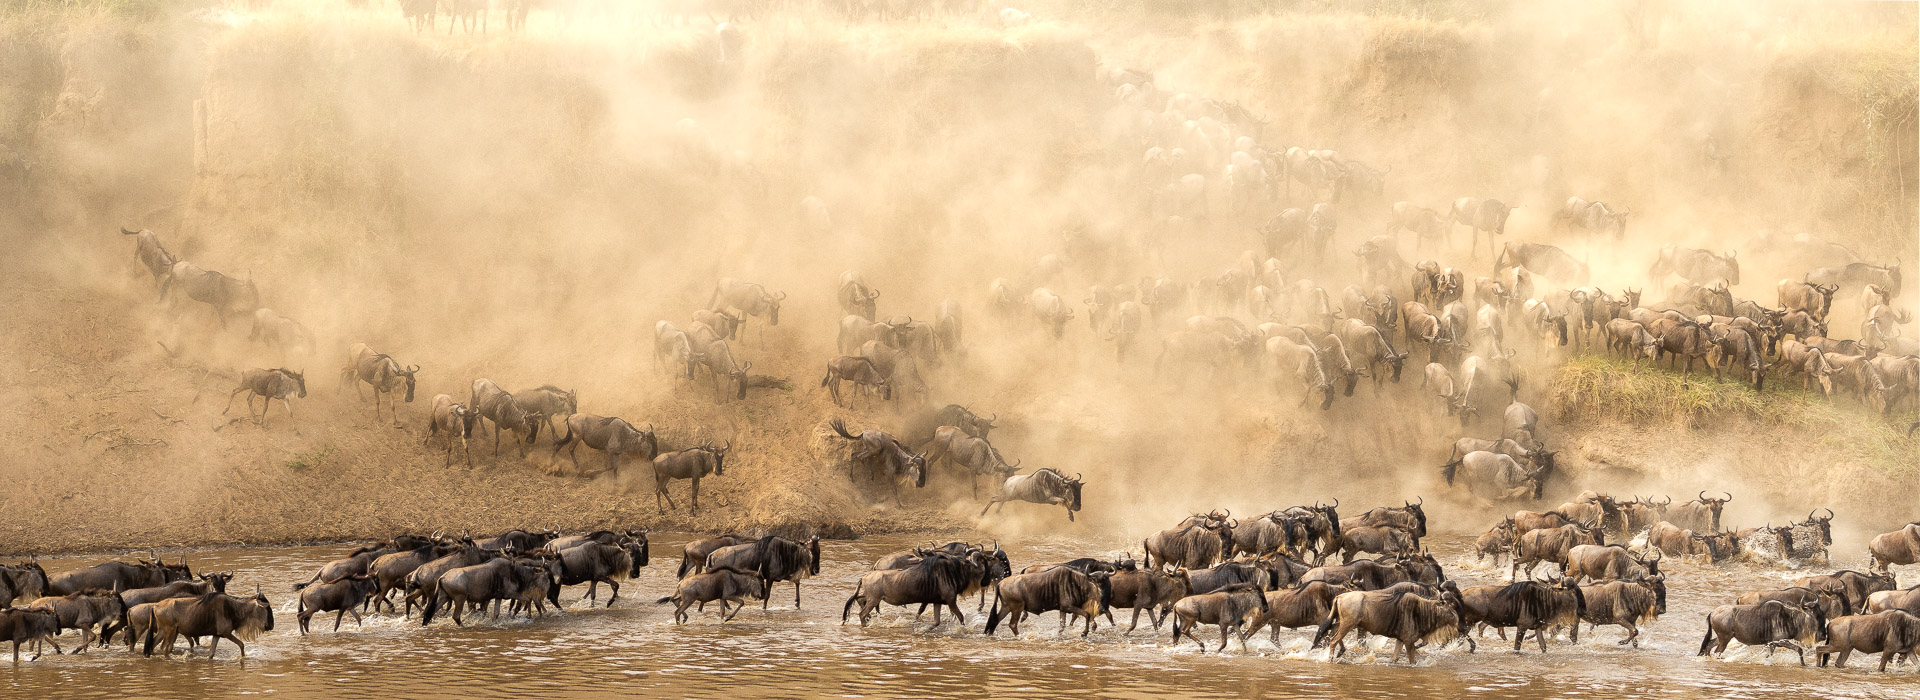 greatmigration masaimara wildlifephotgraphy